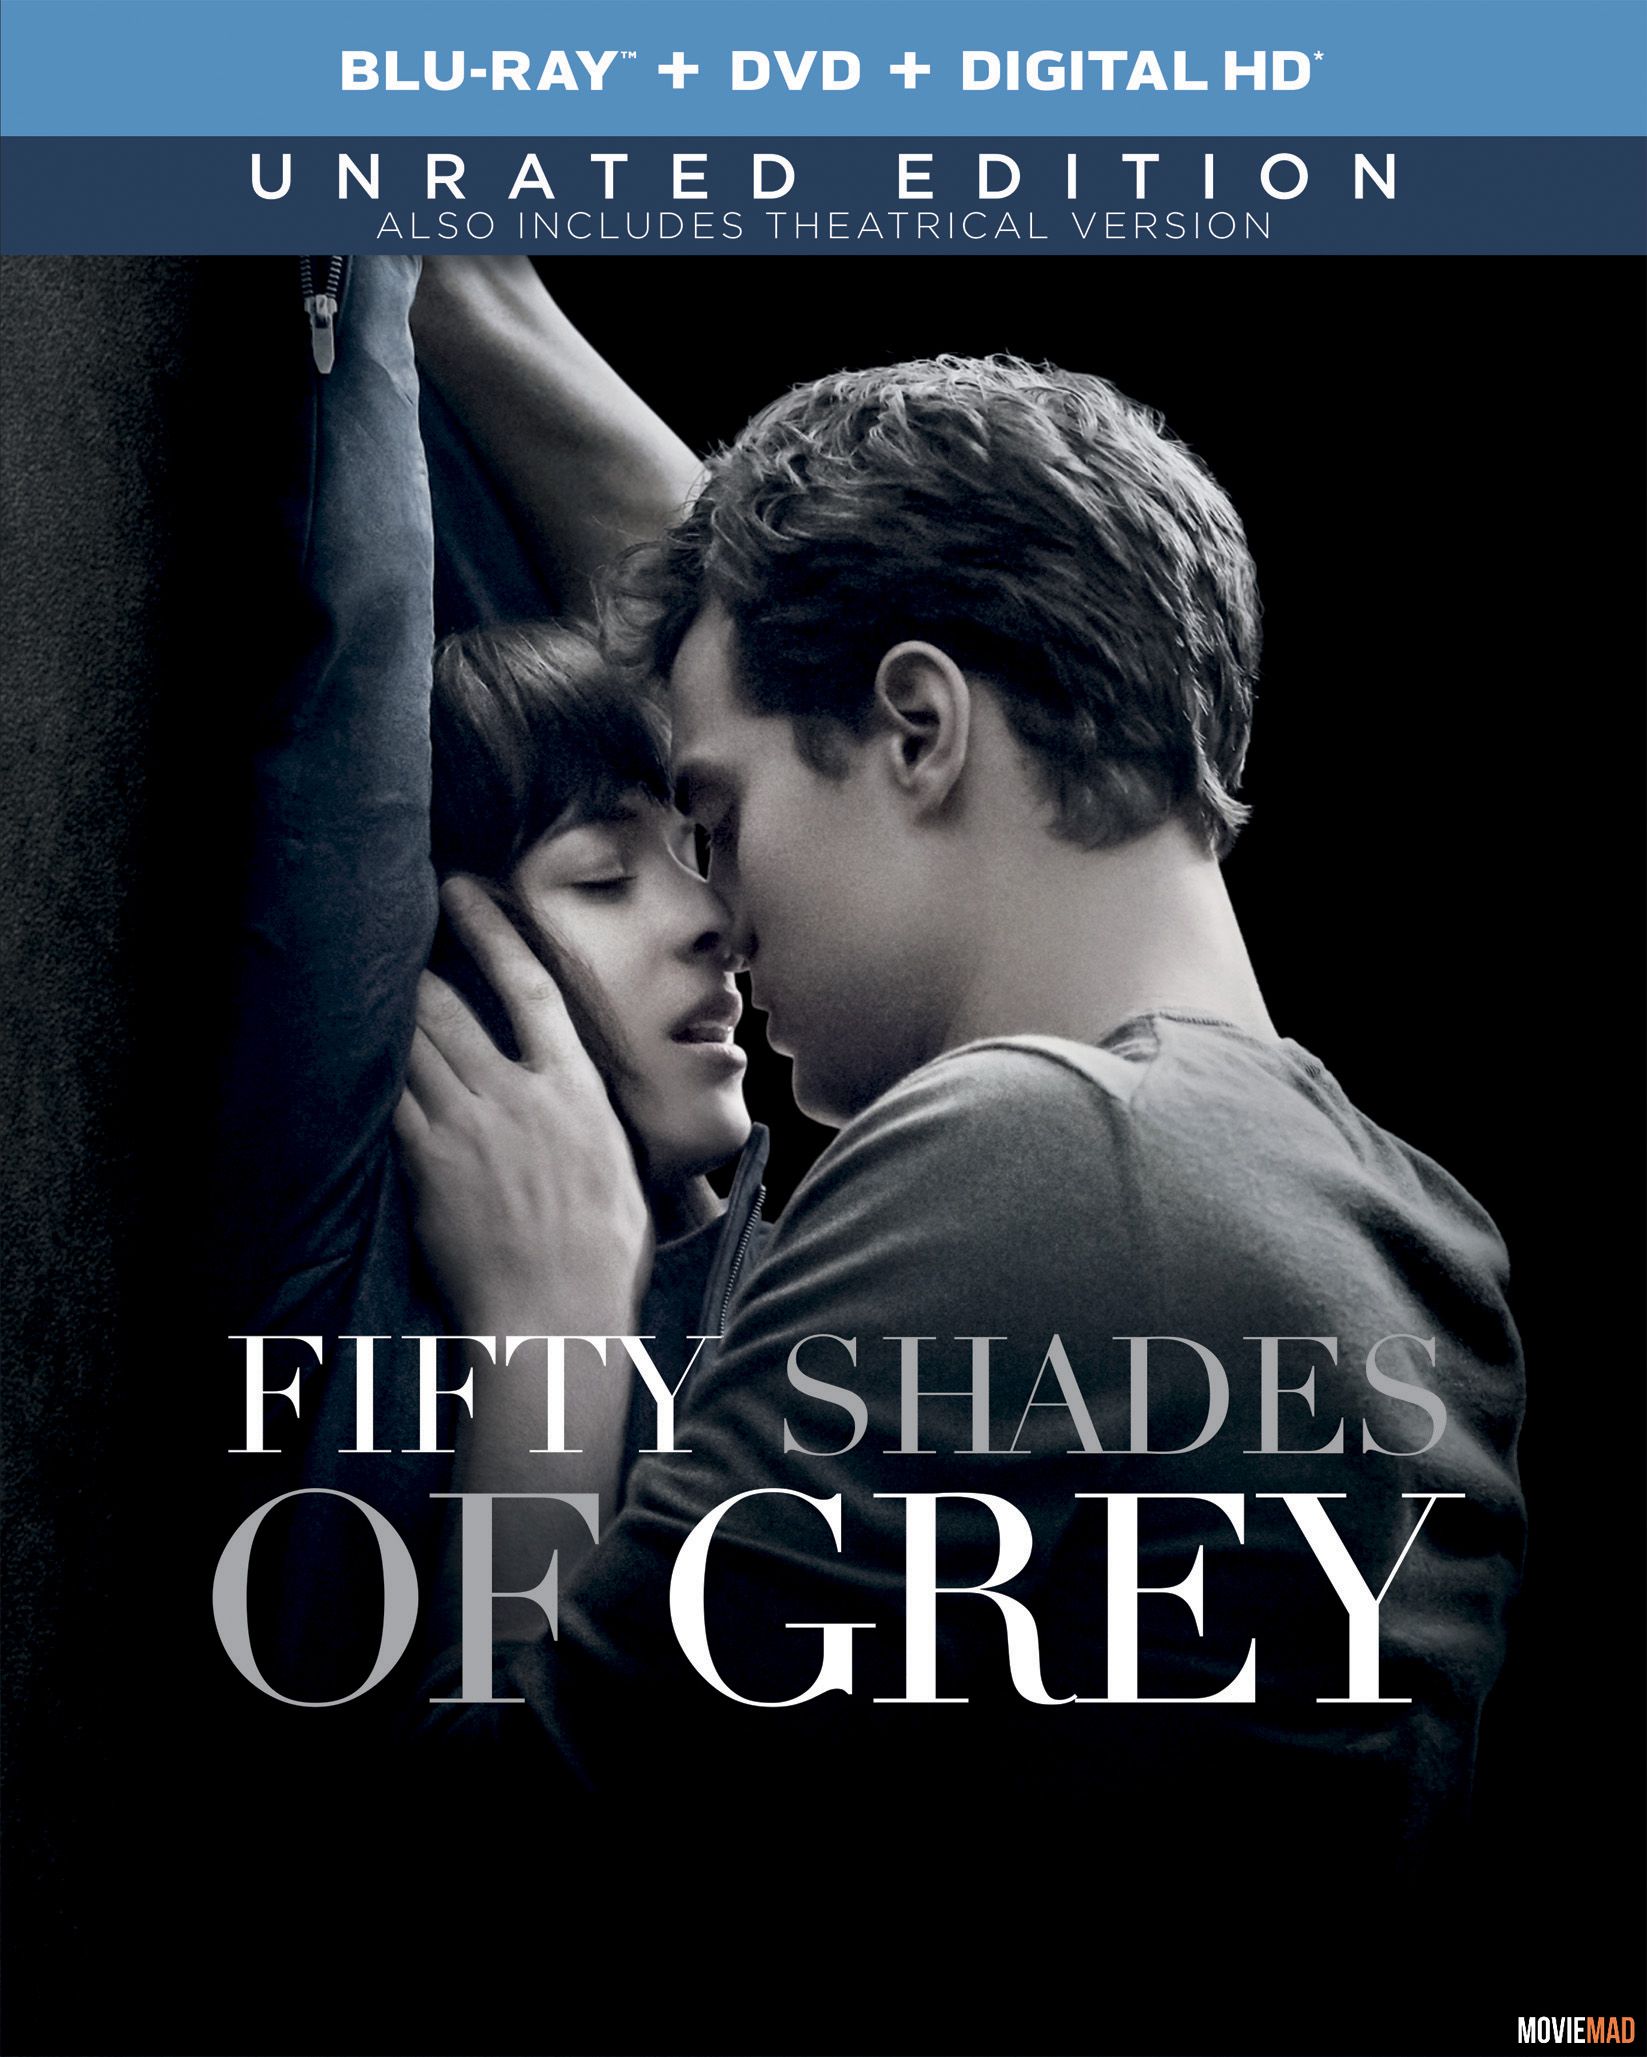 Fifty Shades of Grey 2015 Hindi Dubbed BluRay Full Movie 720p 480p